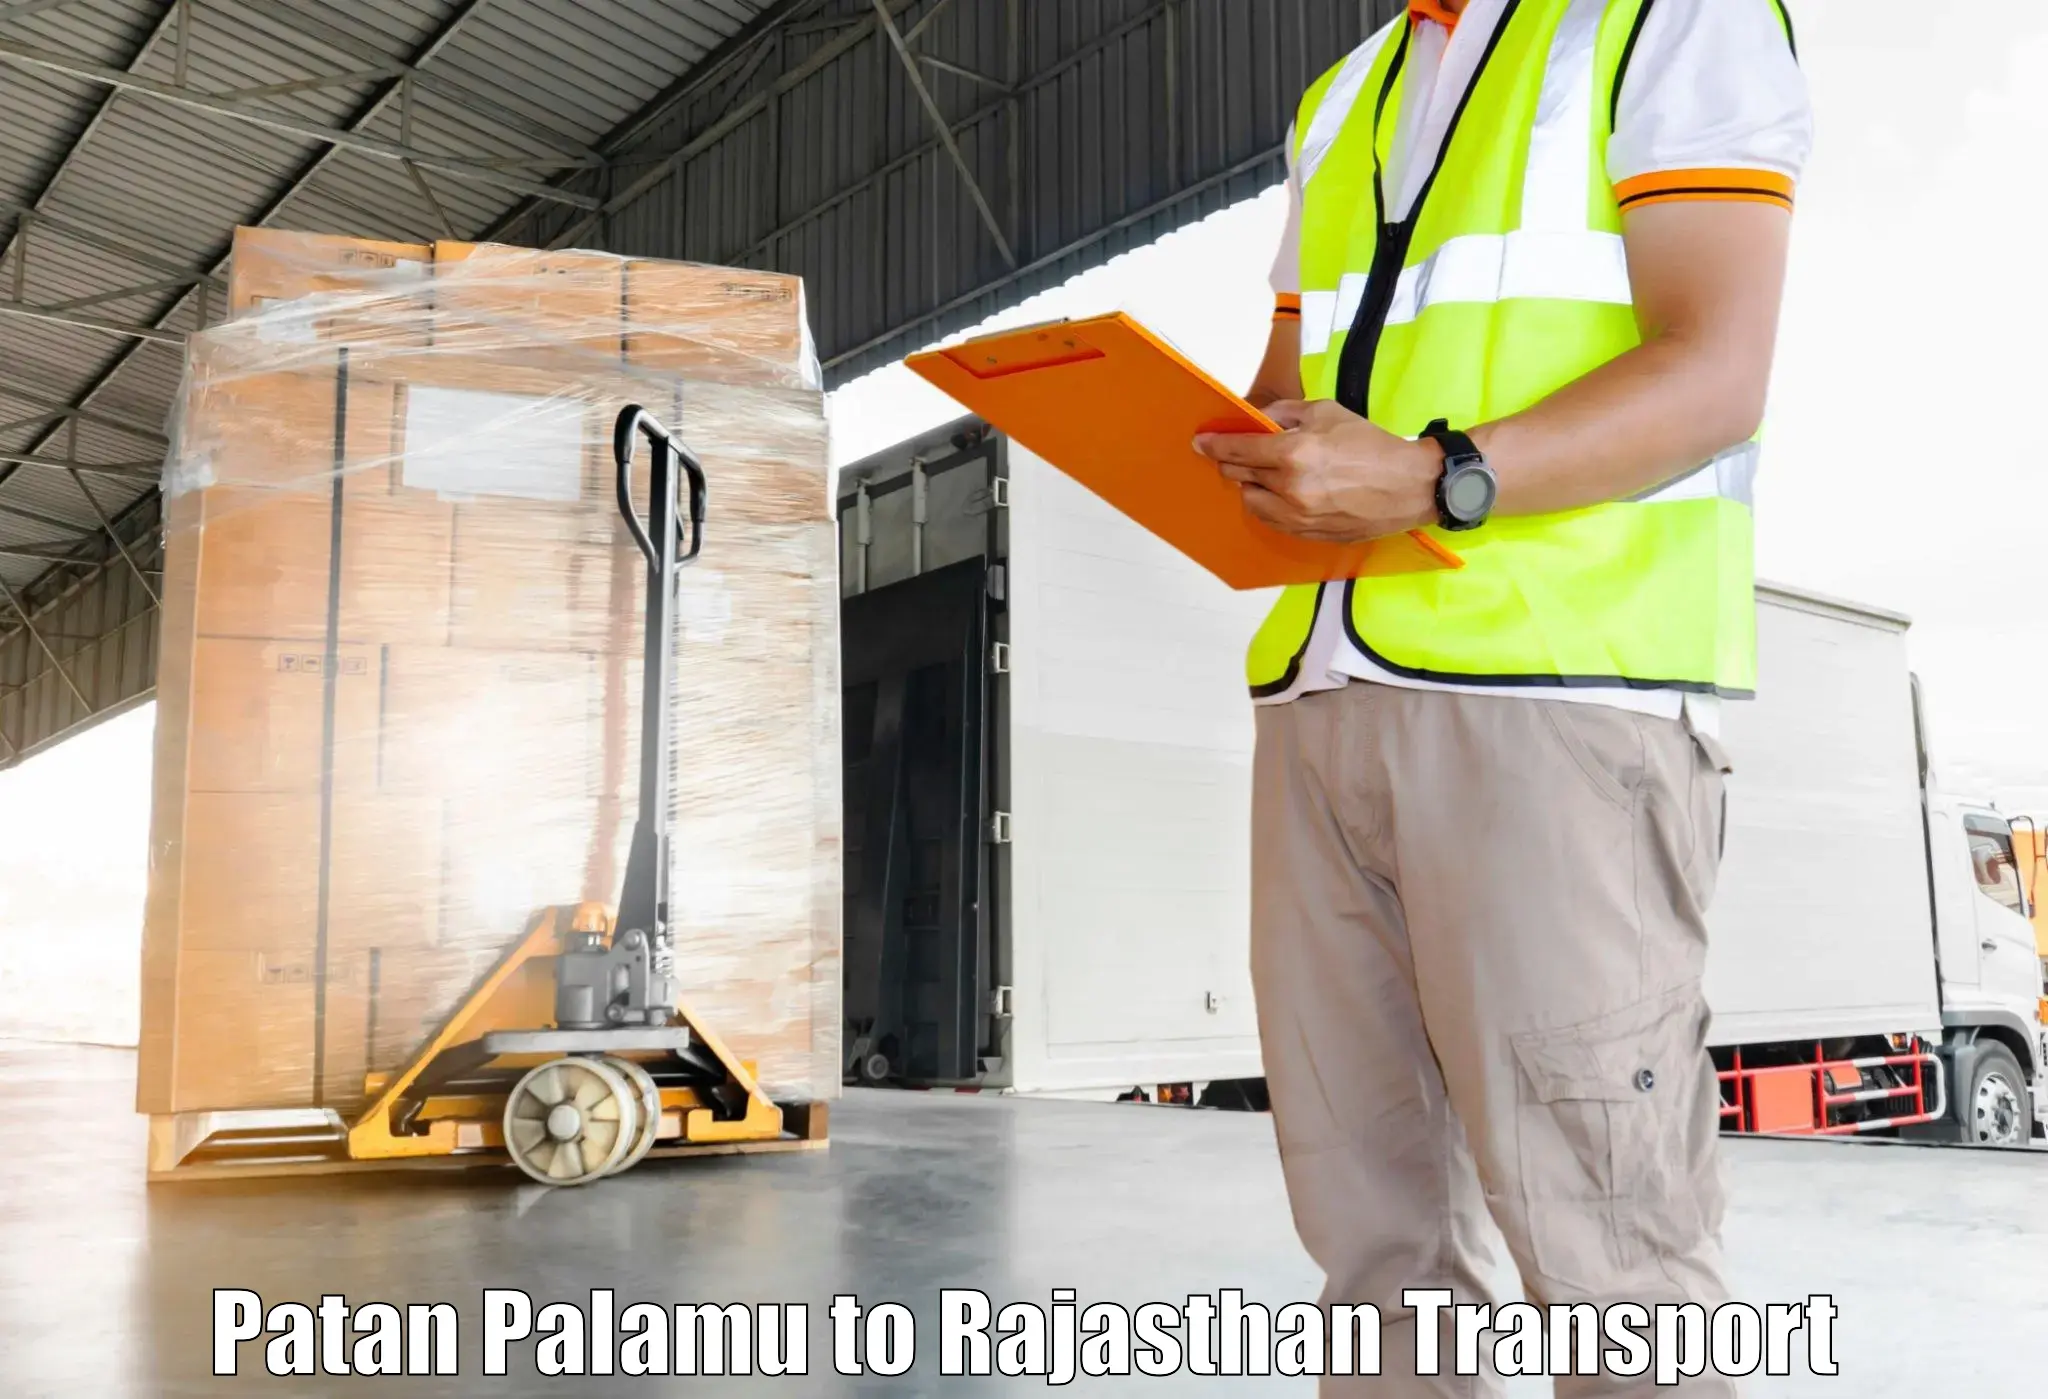 Scooty transport charges Patan Palamu to Falna